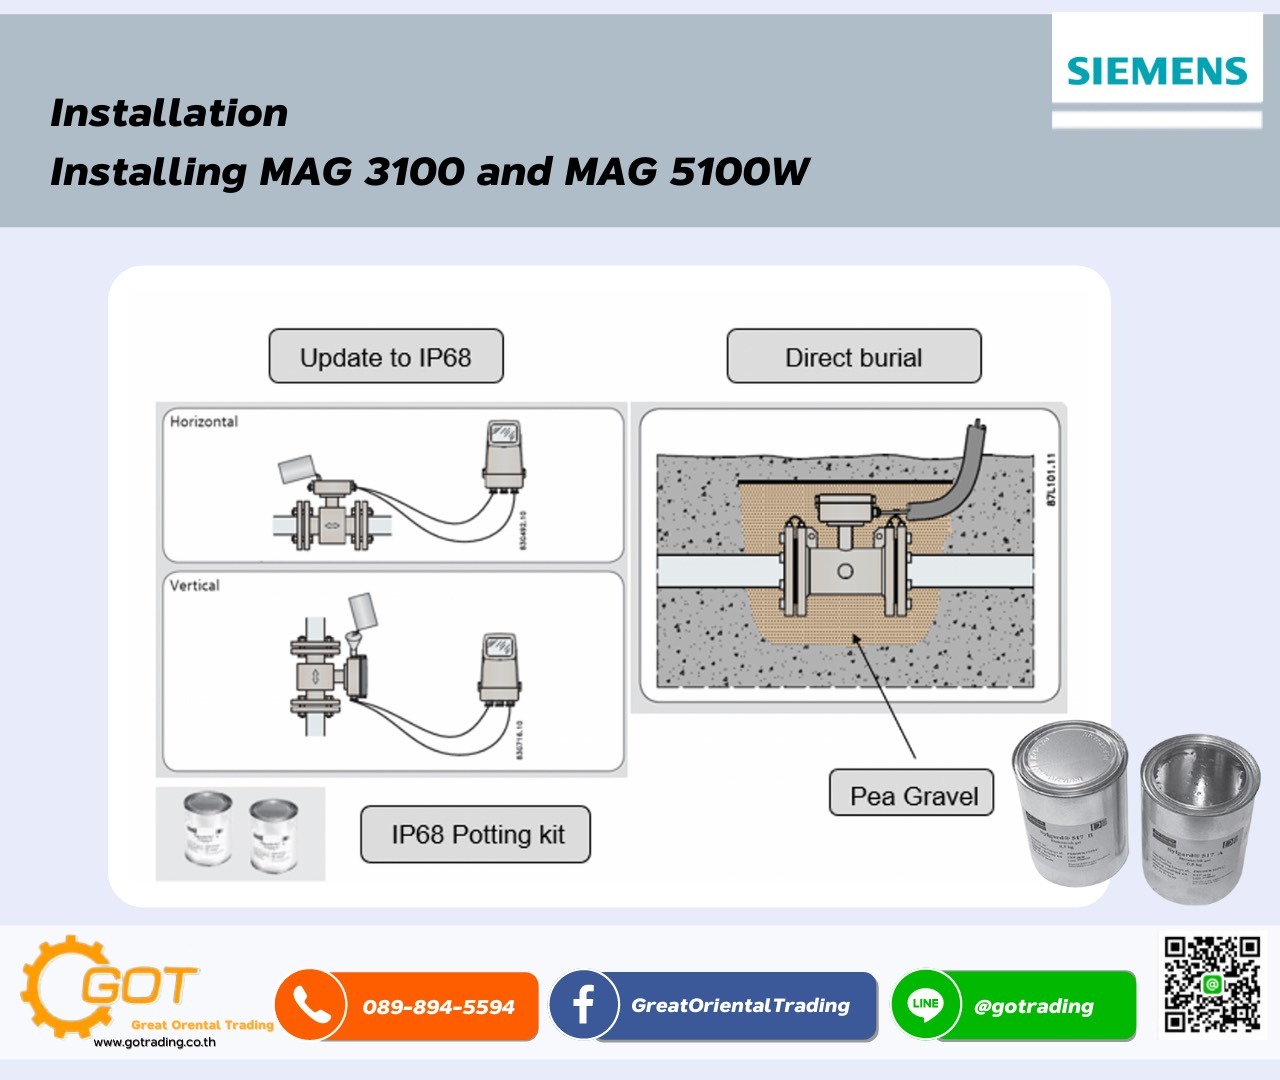 การติดตั้ง Magnetic Flow MeterแบบRemoteทำได้อย่างไรเมื่อต้องการอัพเกรดการติดตั้งเป็น IP68 Installing MAG 3100 and MAG 5100W กรณีที่ 1 ติดตั้งท่อตำแหน่ง Terminal ต้องทำการใส่ Potting Kit ก่อนปิดฝา กรณีที่ 2 ฝังไว้ใต้ดิน ตำแหน่ง Terminal ต้องทำการใส่ Potting Kit ก่อนปิดฝาและฝังดิน และควรฝังด้วยทรายหรือกรวดละเอียด